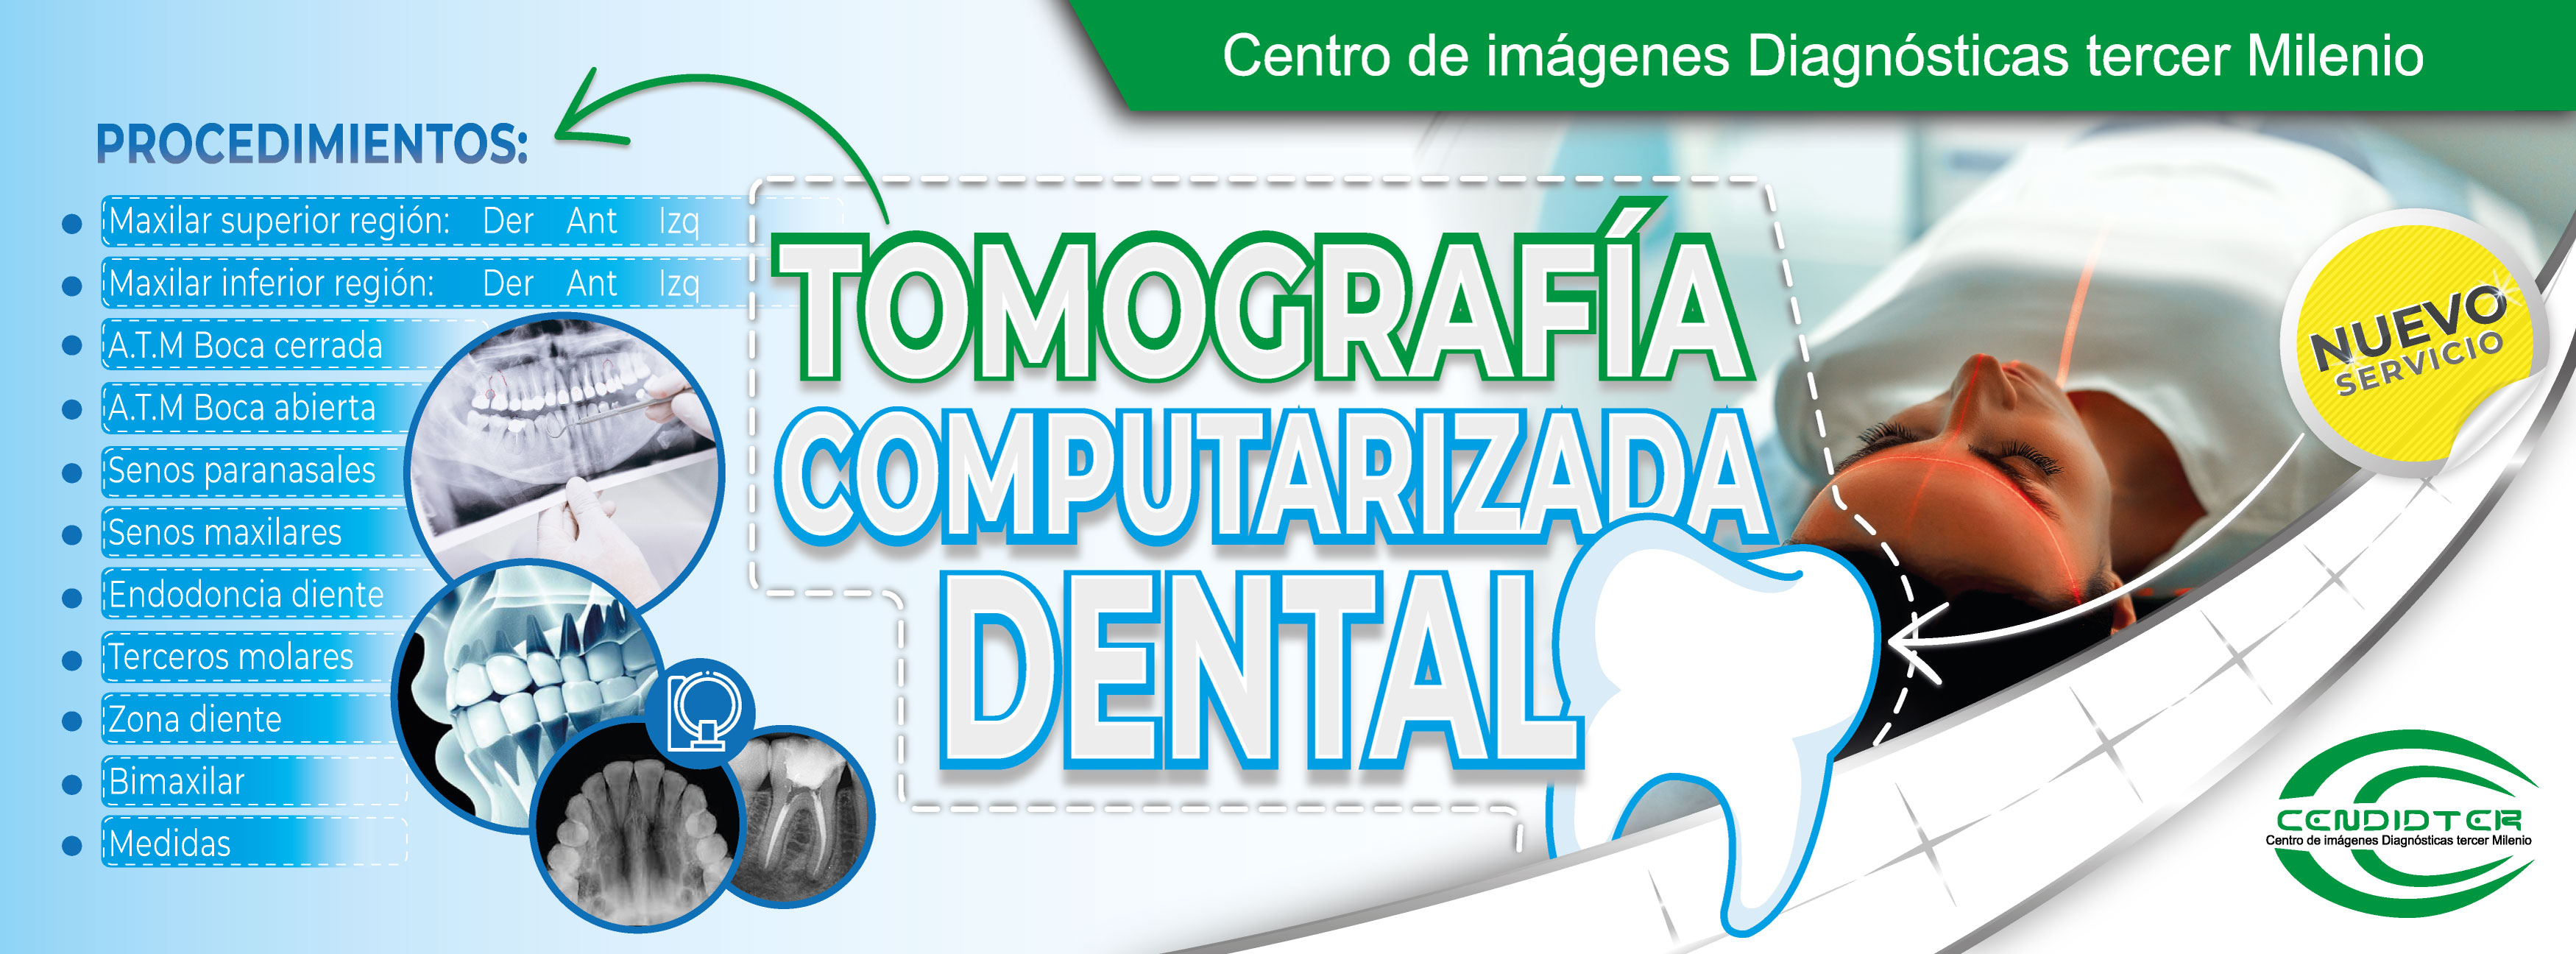 tomografia-dental-banner